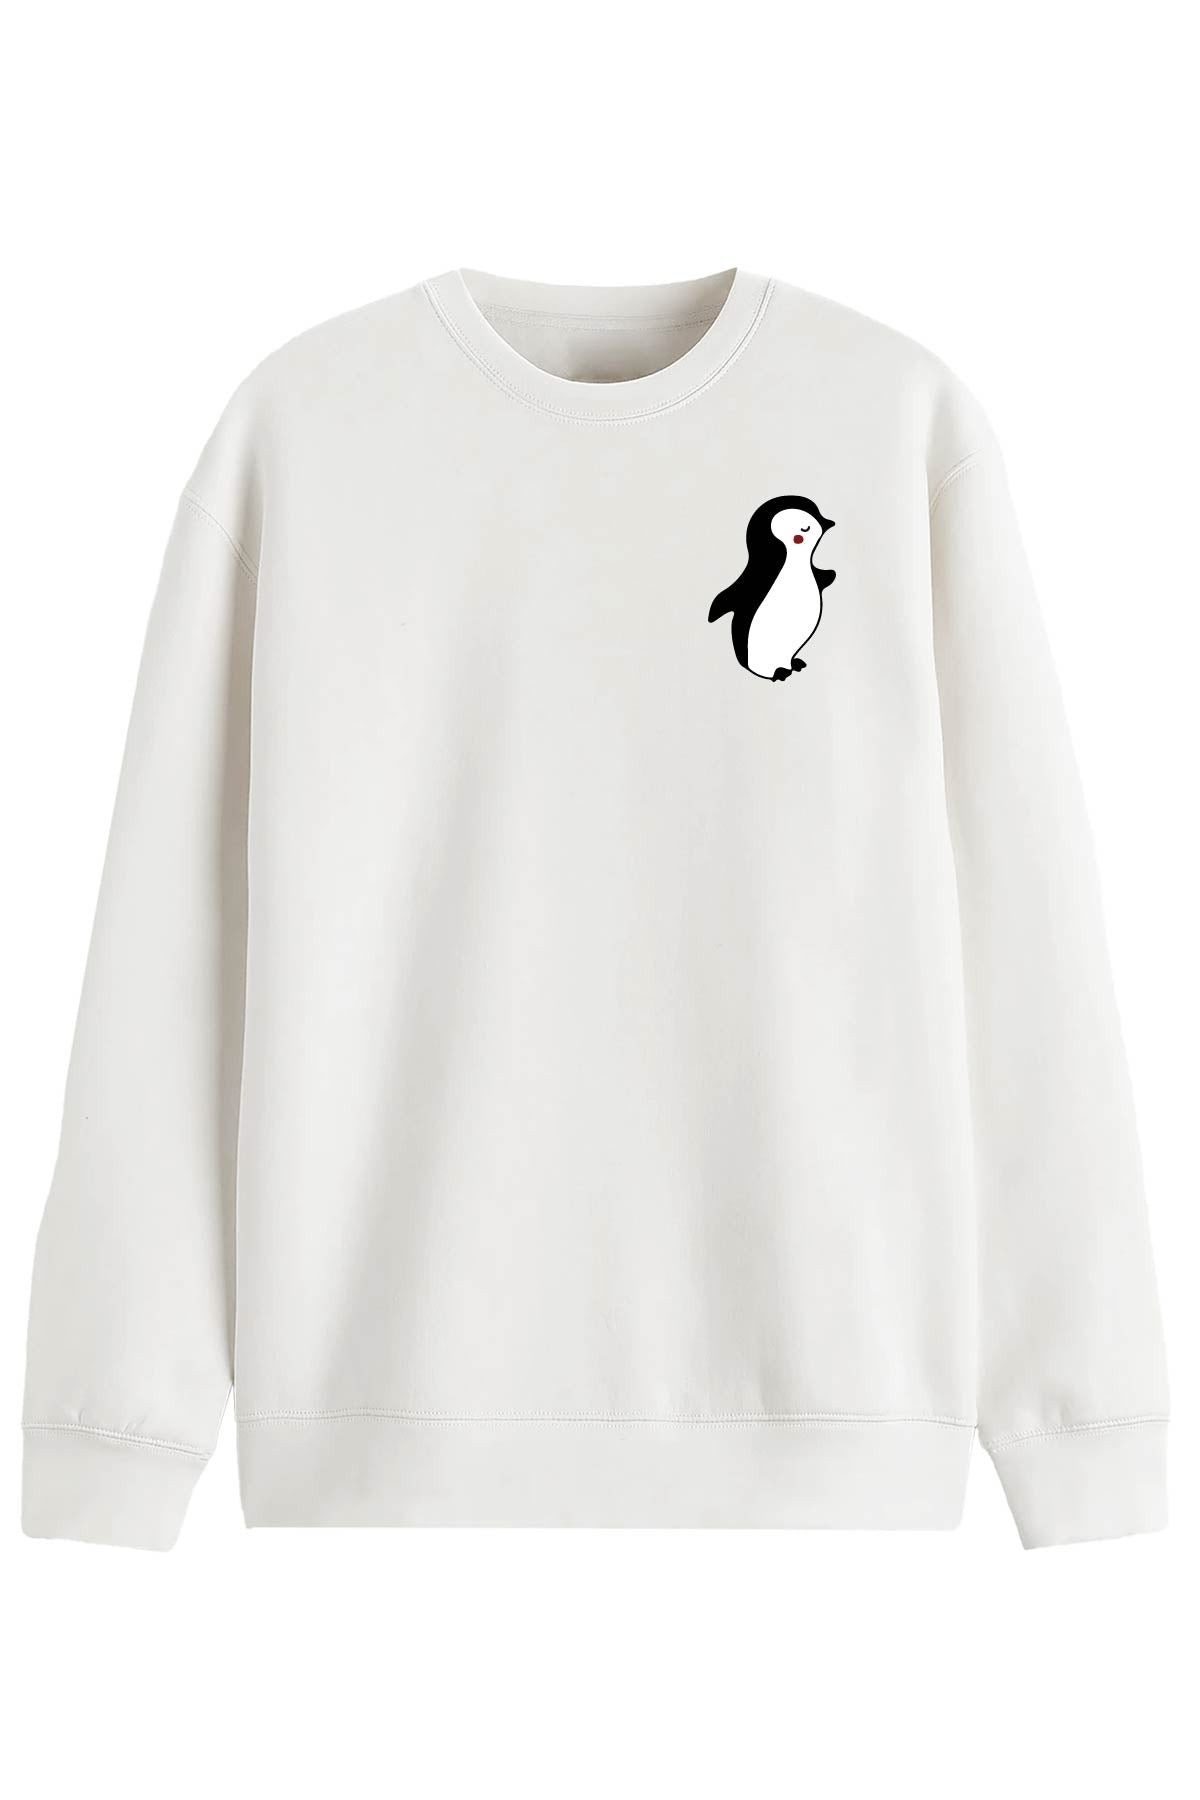 Penguin Love -  Sweatshirt